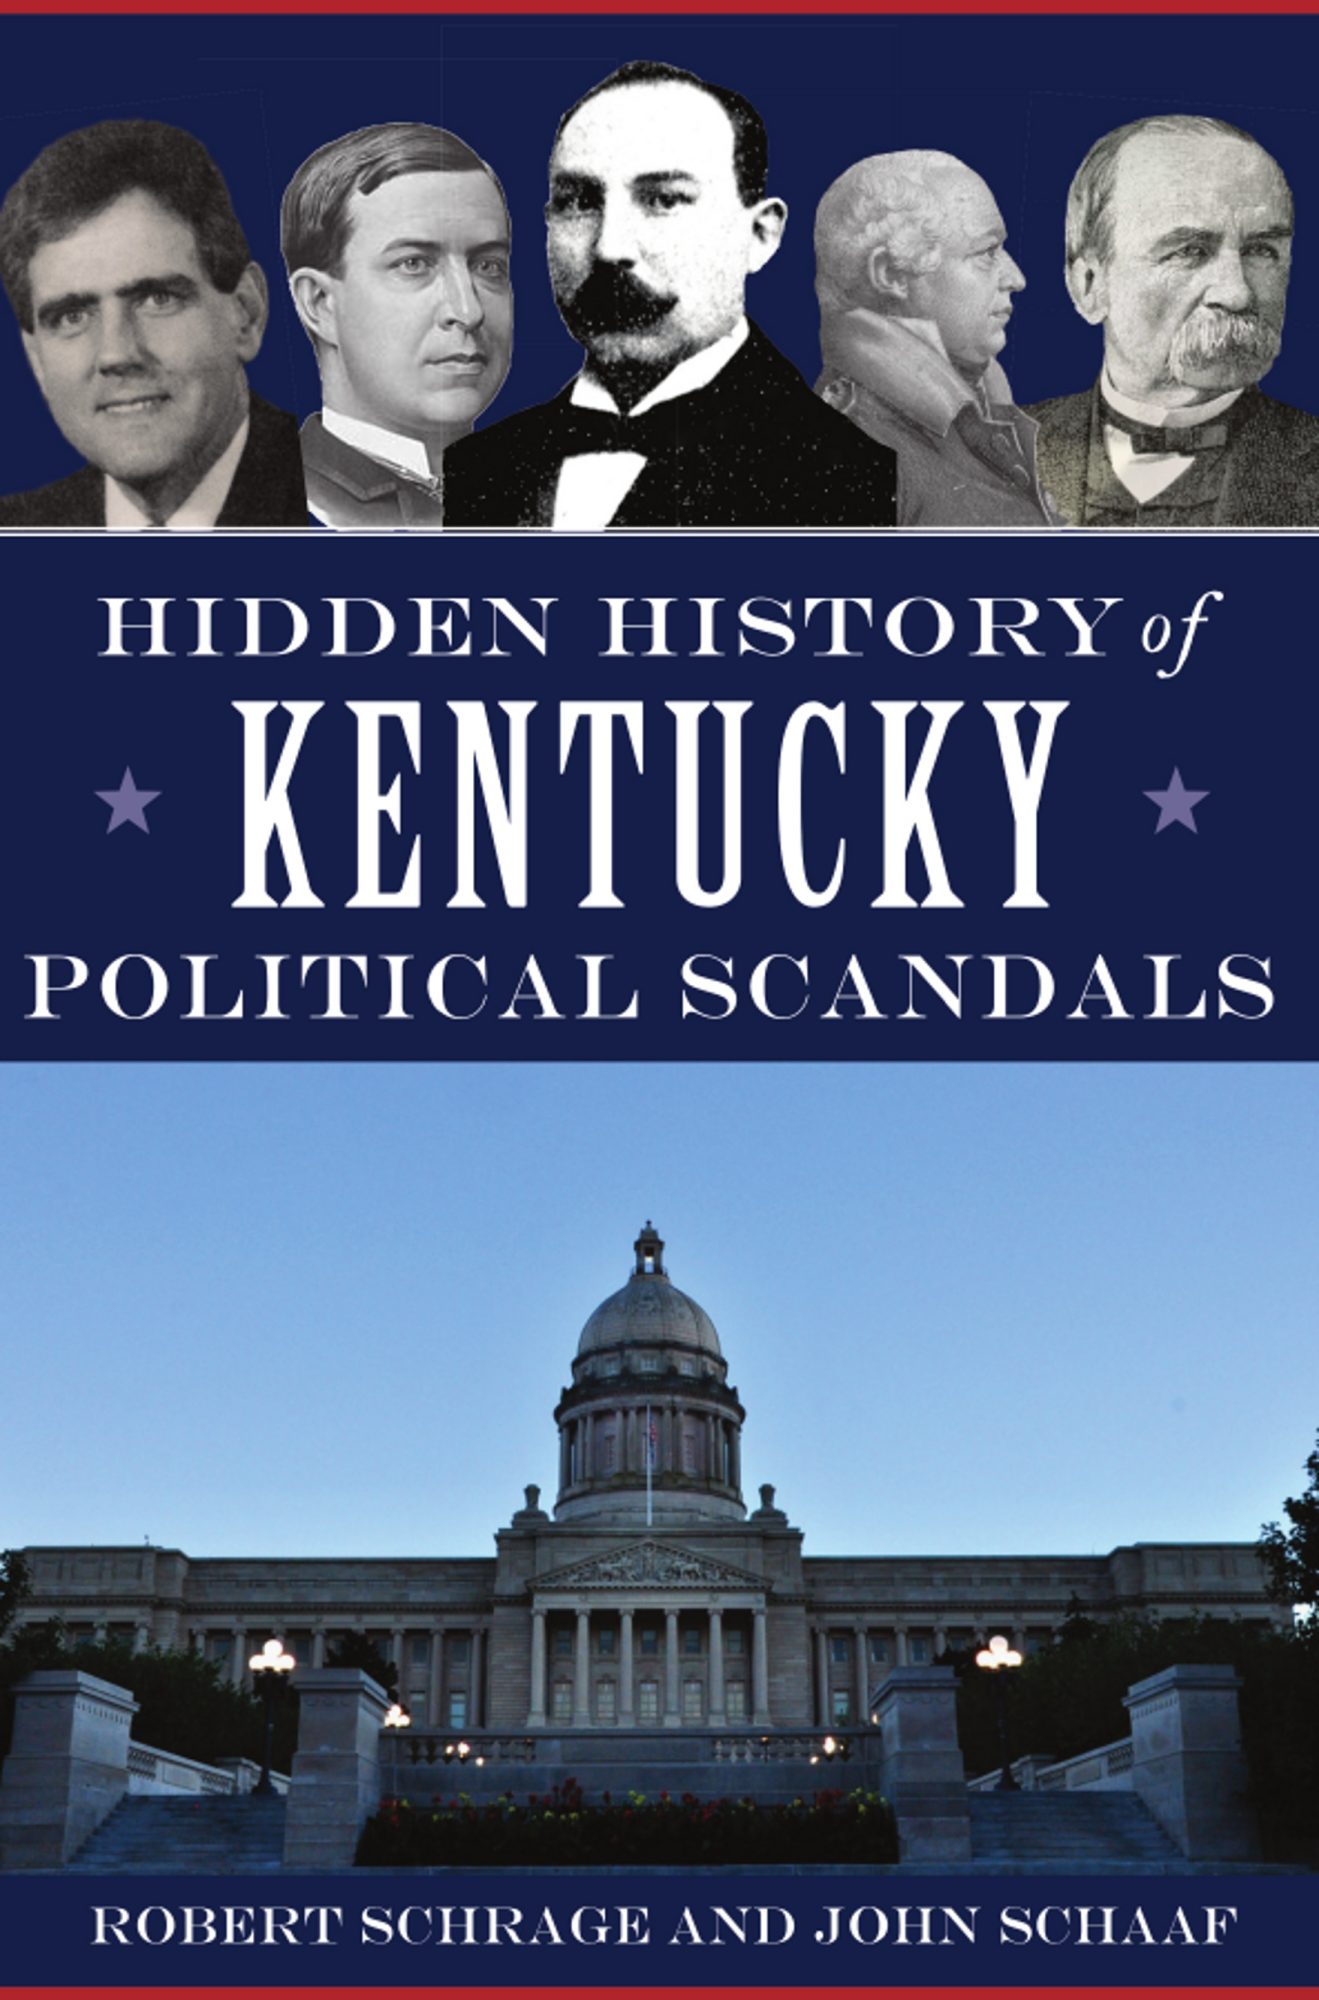 Hidden History of Kentucky Political Scandals